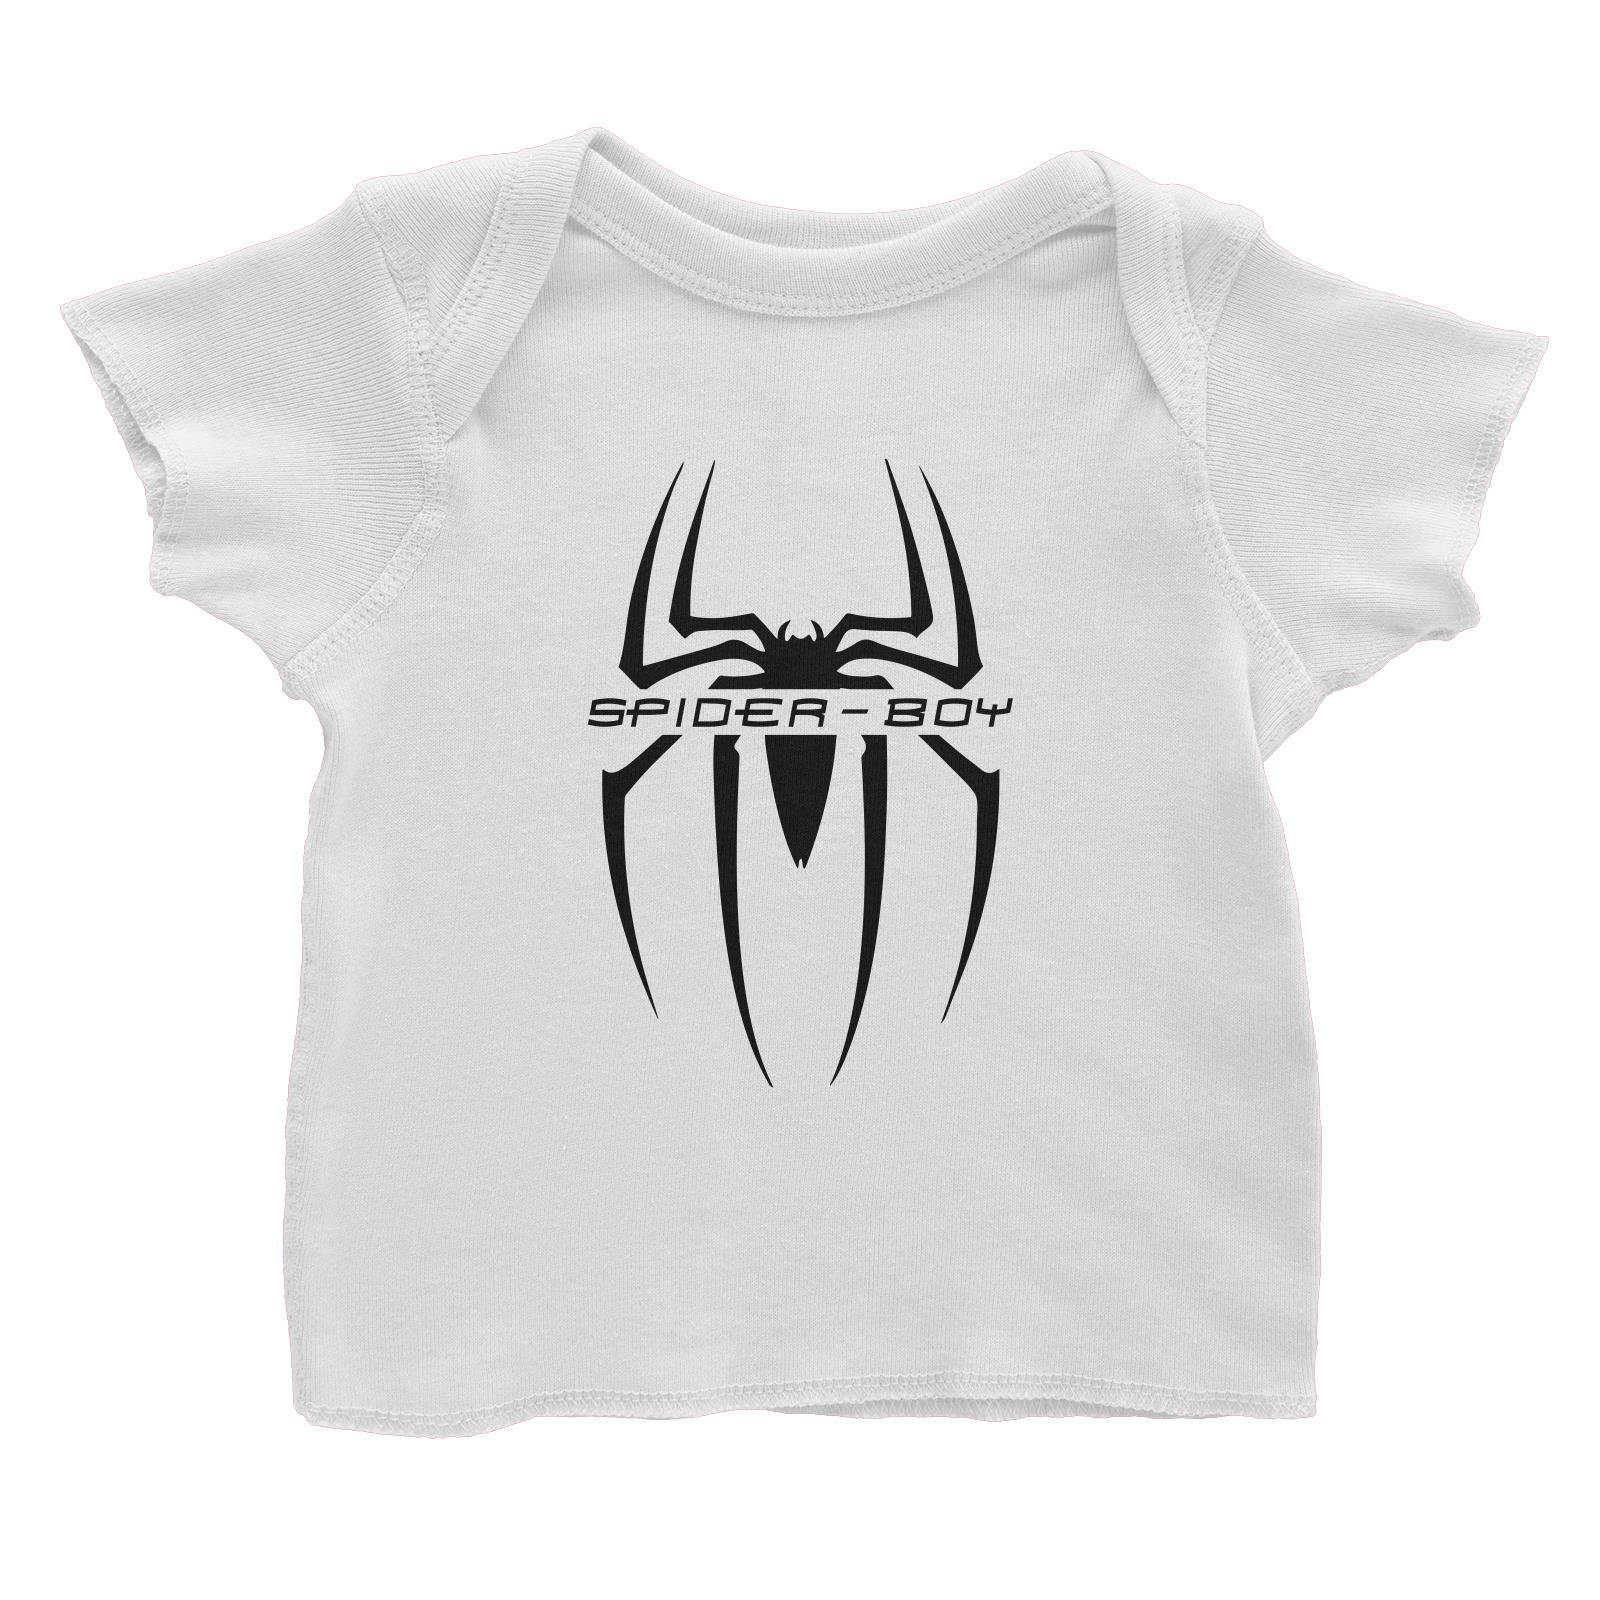 Superhero Spider Boy Baby T-Shirt  Matching Family